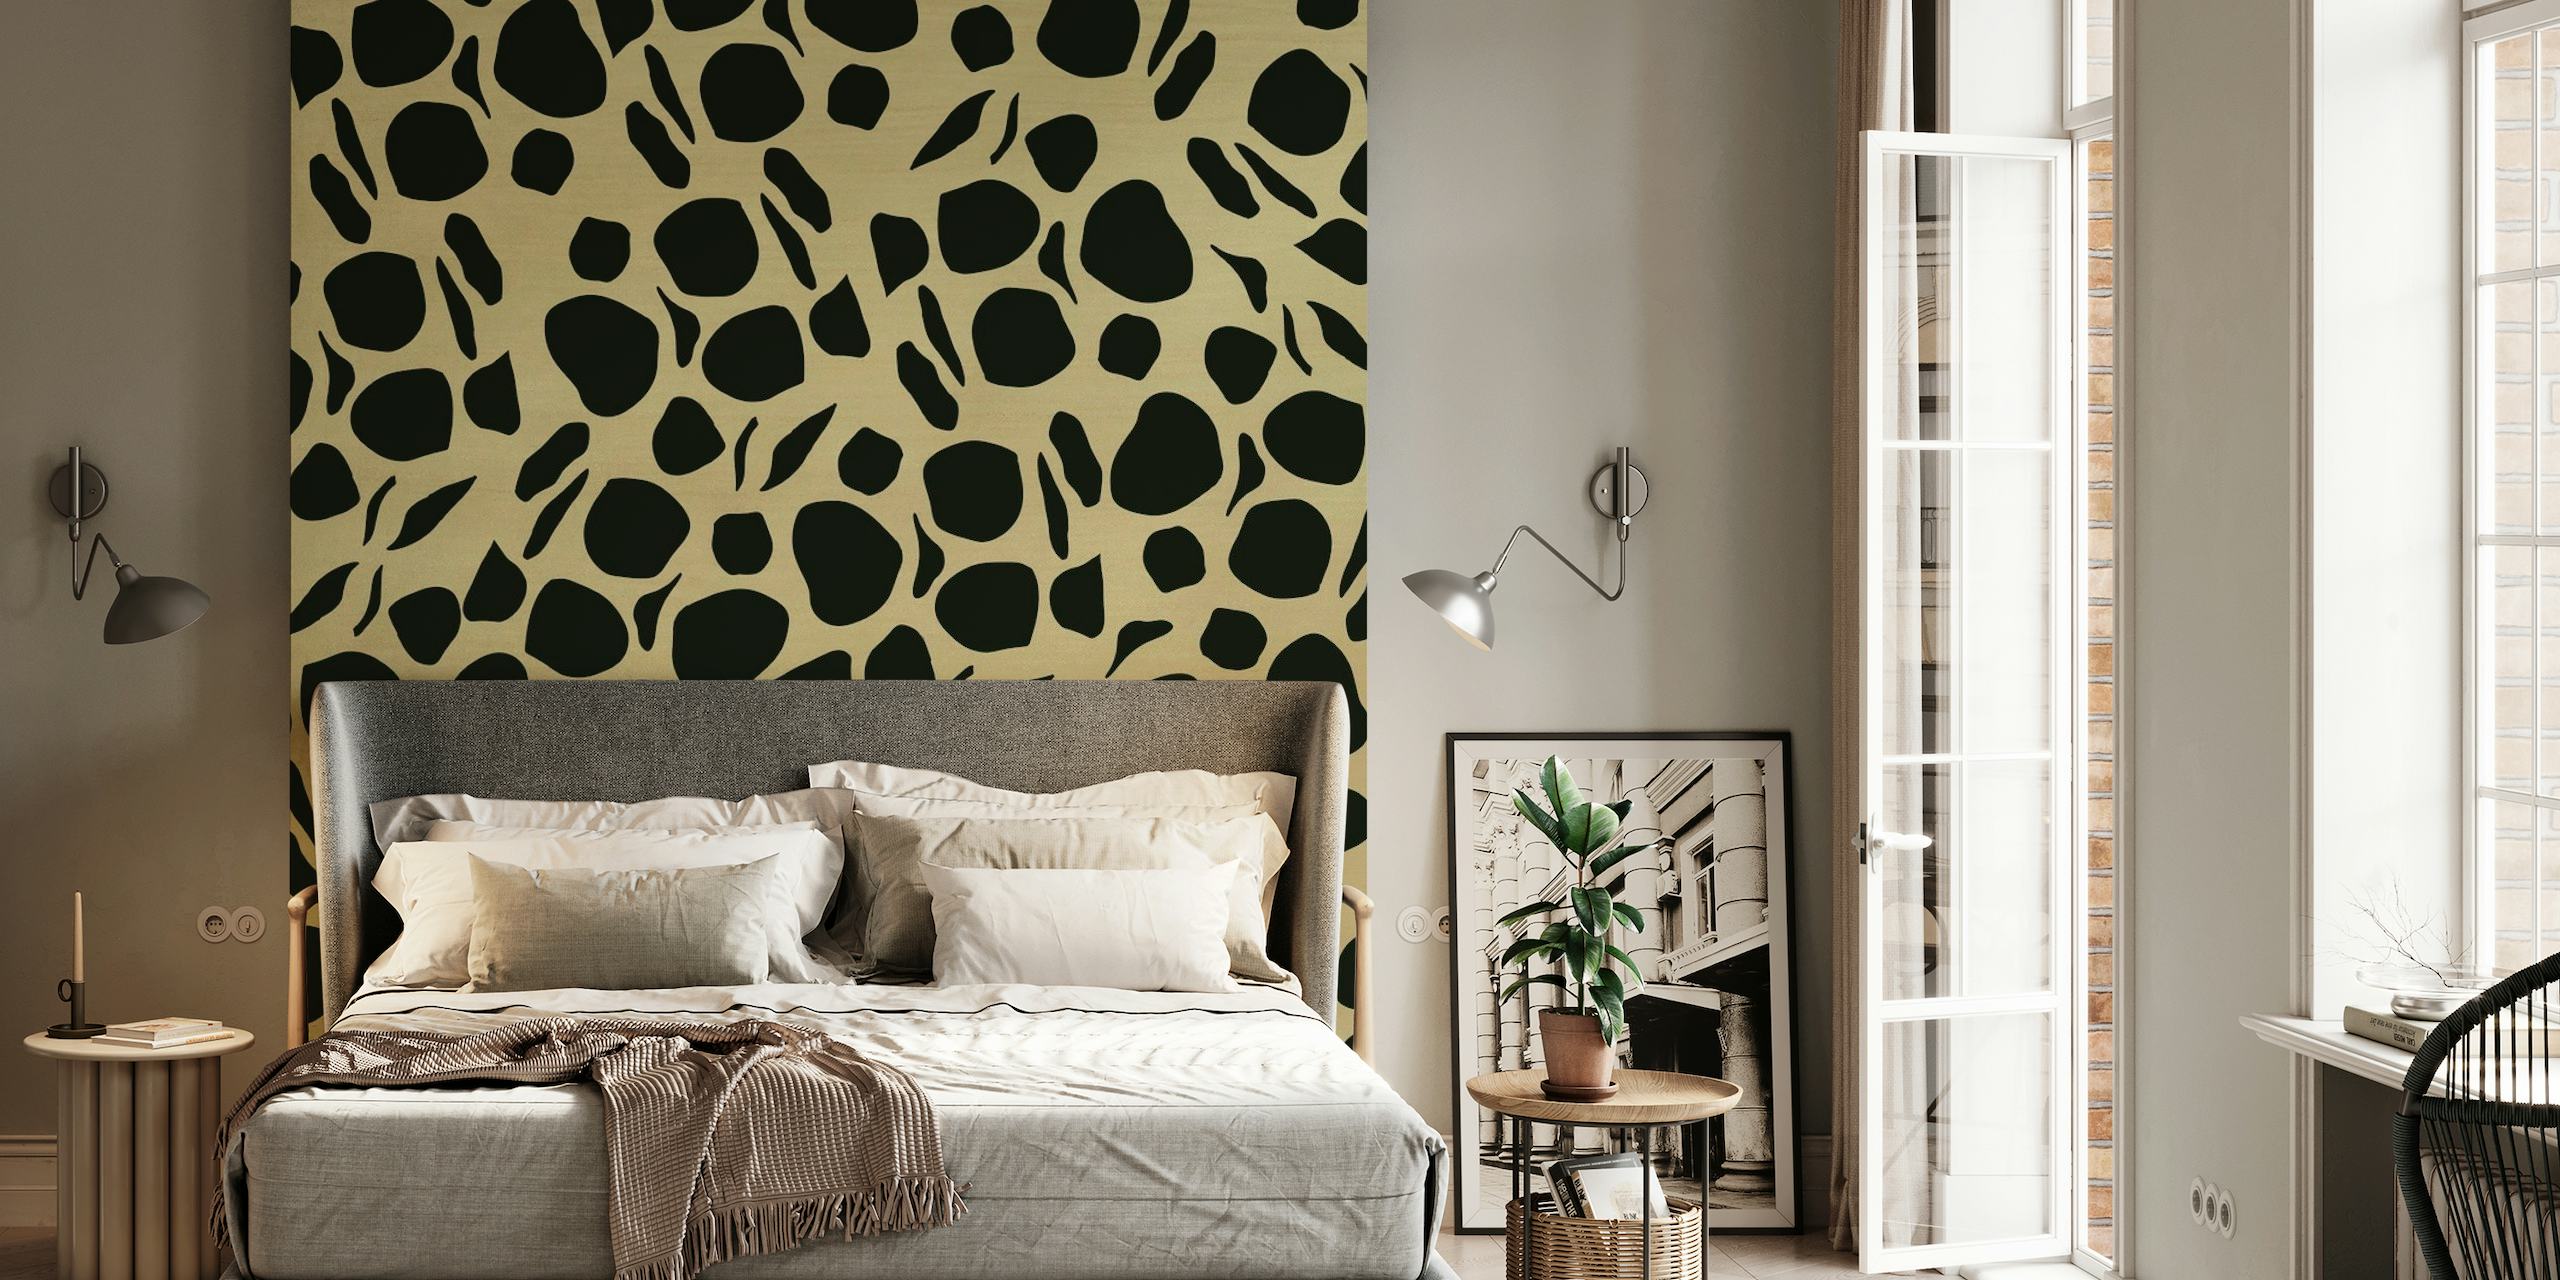 Ein Wandgemälde mit auffälligem Animal-Print-Muster auf goldenem Hintergrund für moderne, glamouröse Innenräume.